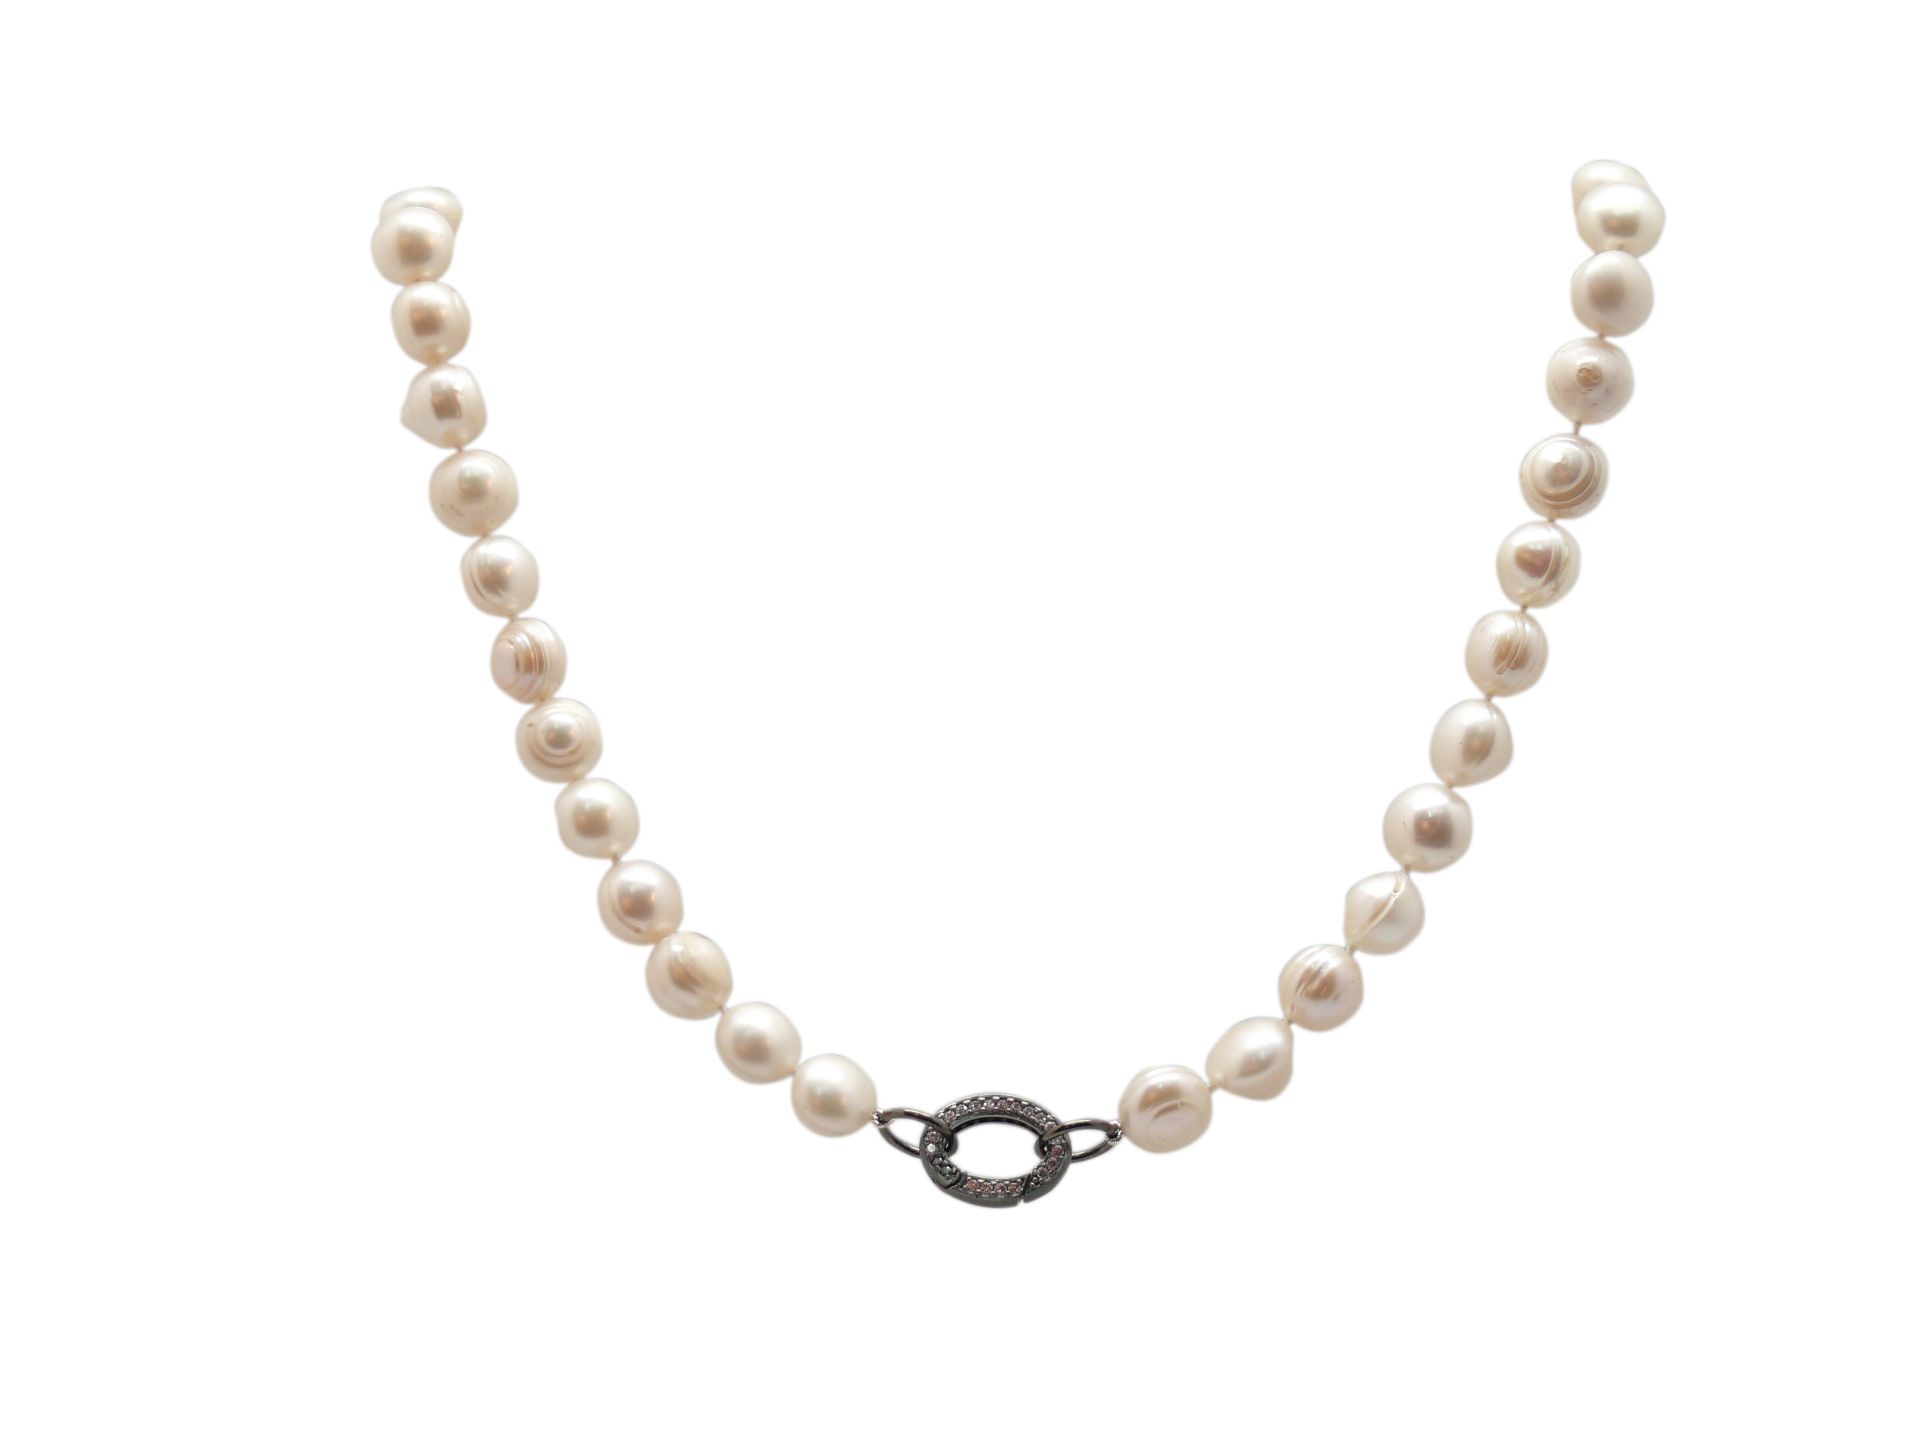 NECKLACE De perlas barrocas, cierre en plata pavonada, 88 cm. long. Starting Price: €200